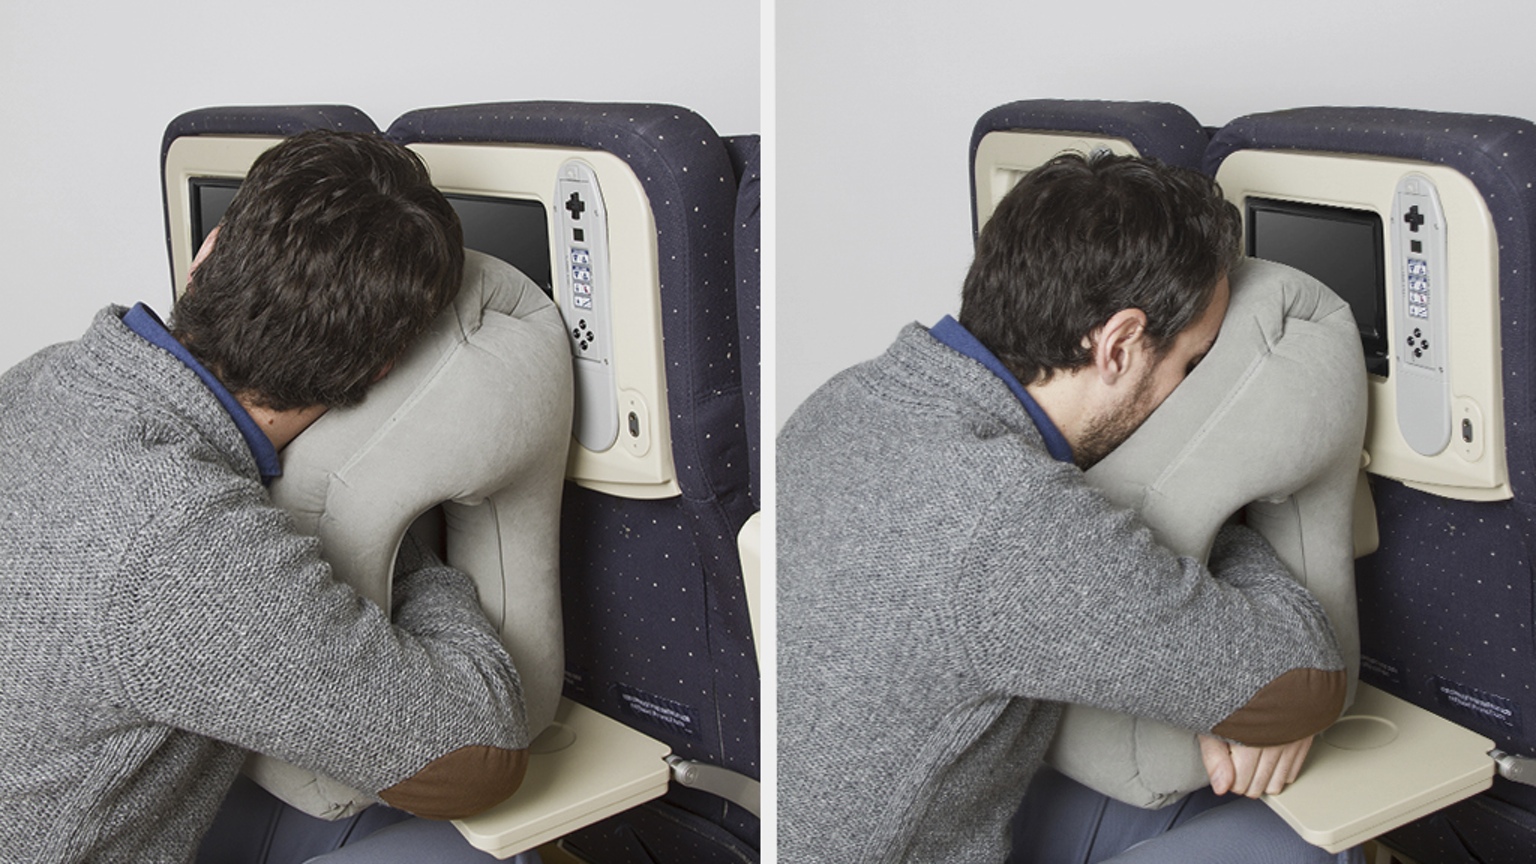 woolip-travel-pillow-smart-pillow